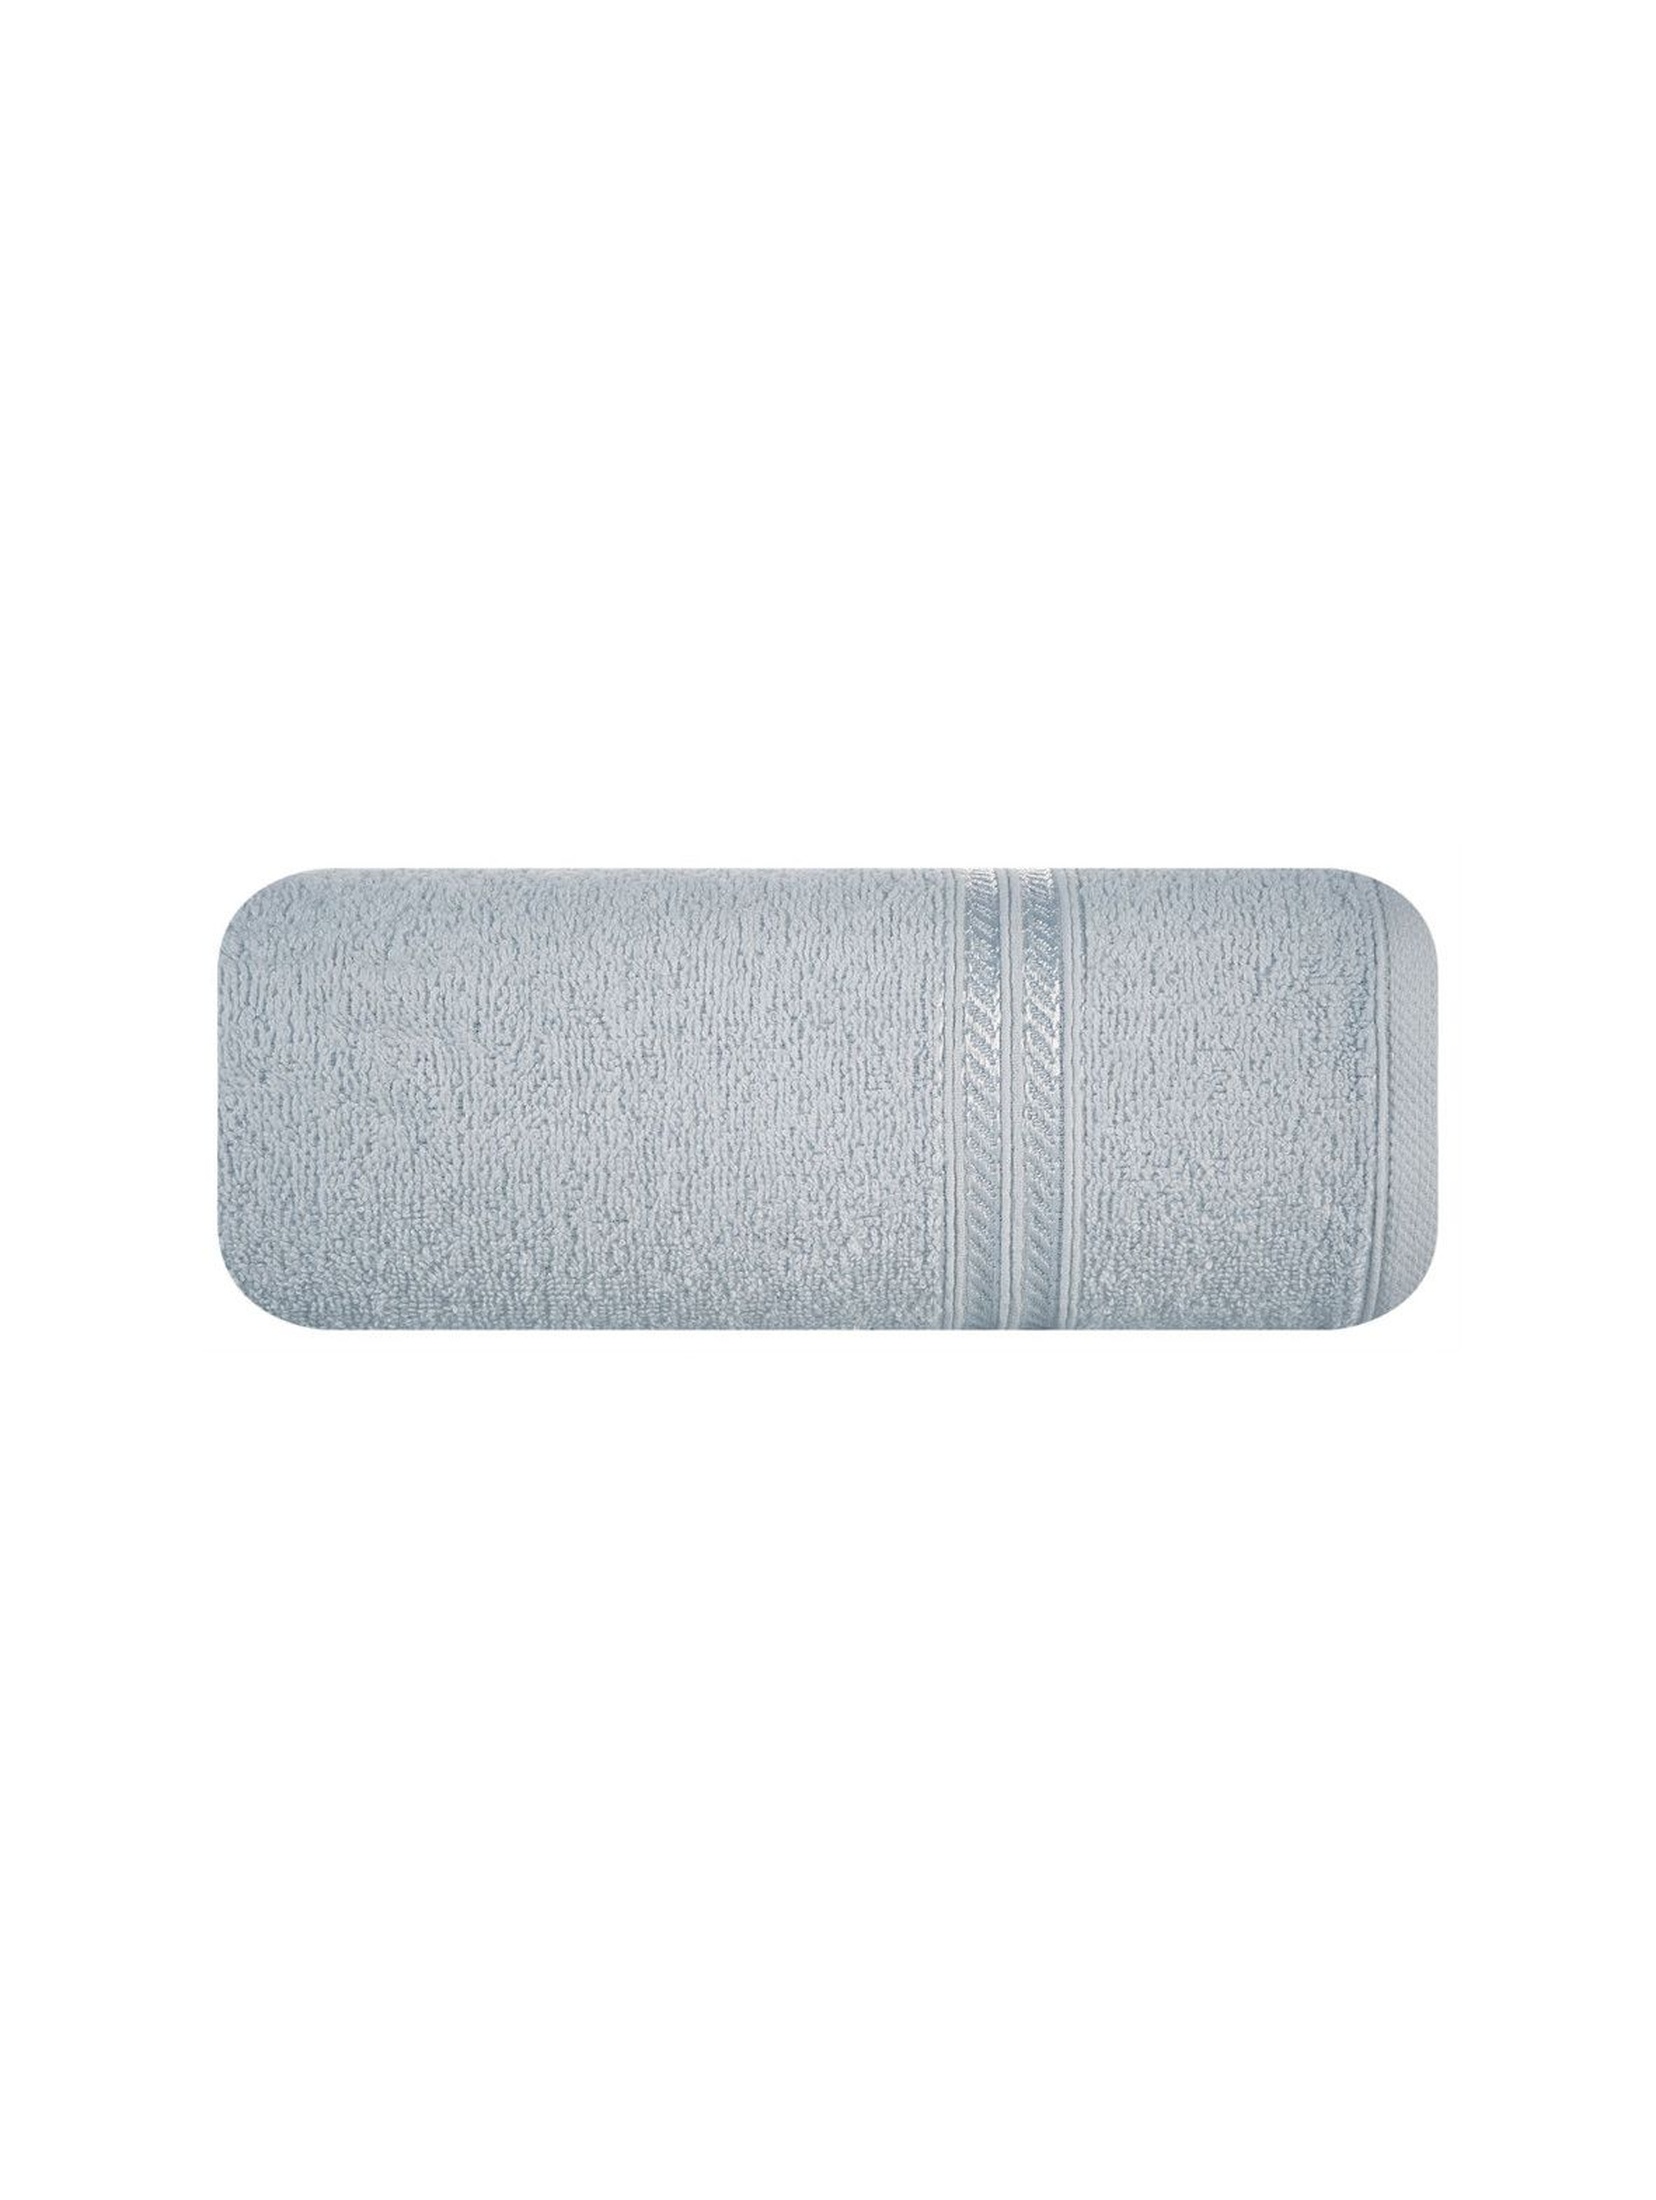 Ręcznik z bordiurą w pasy srebrny 70x140 cm